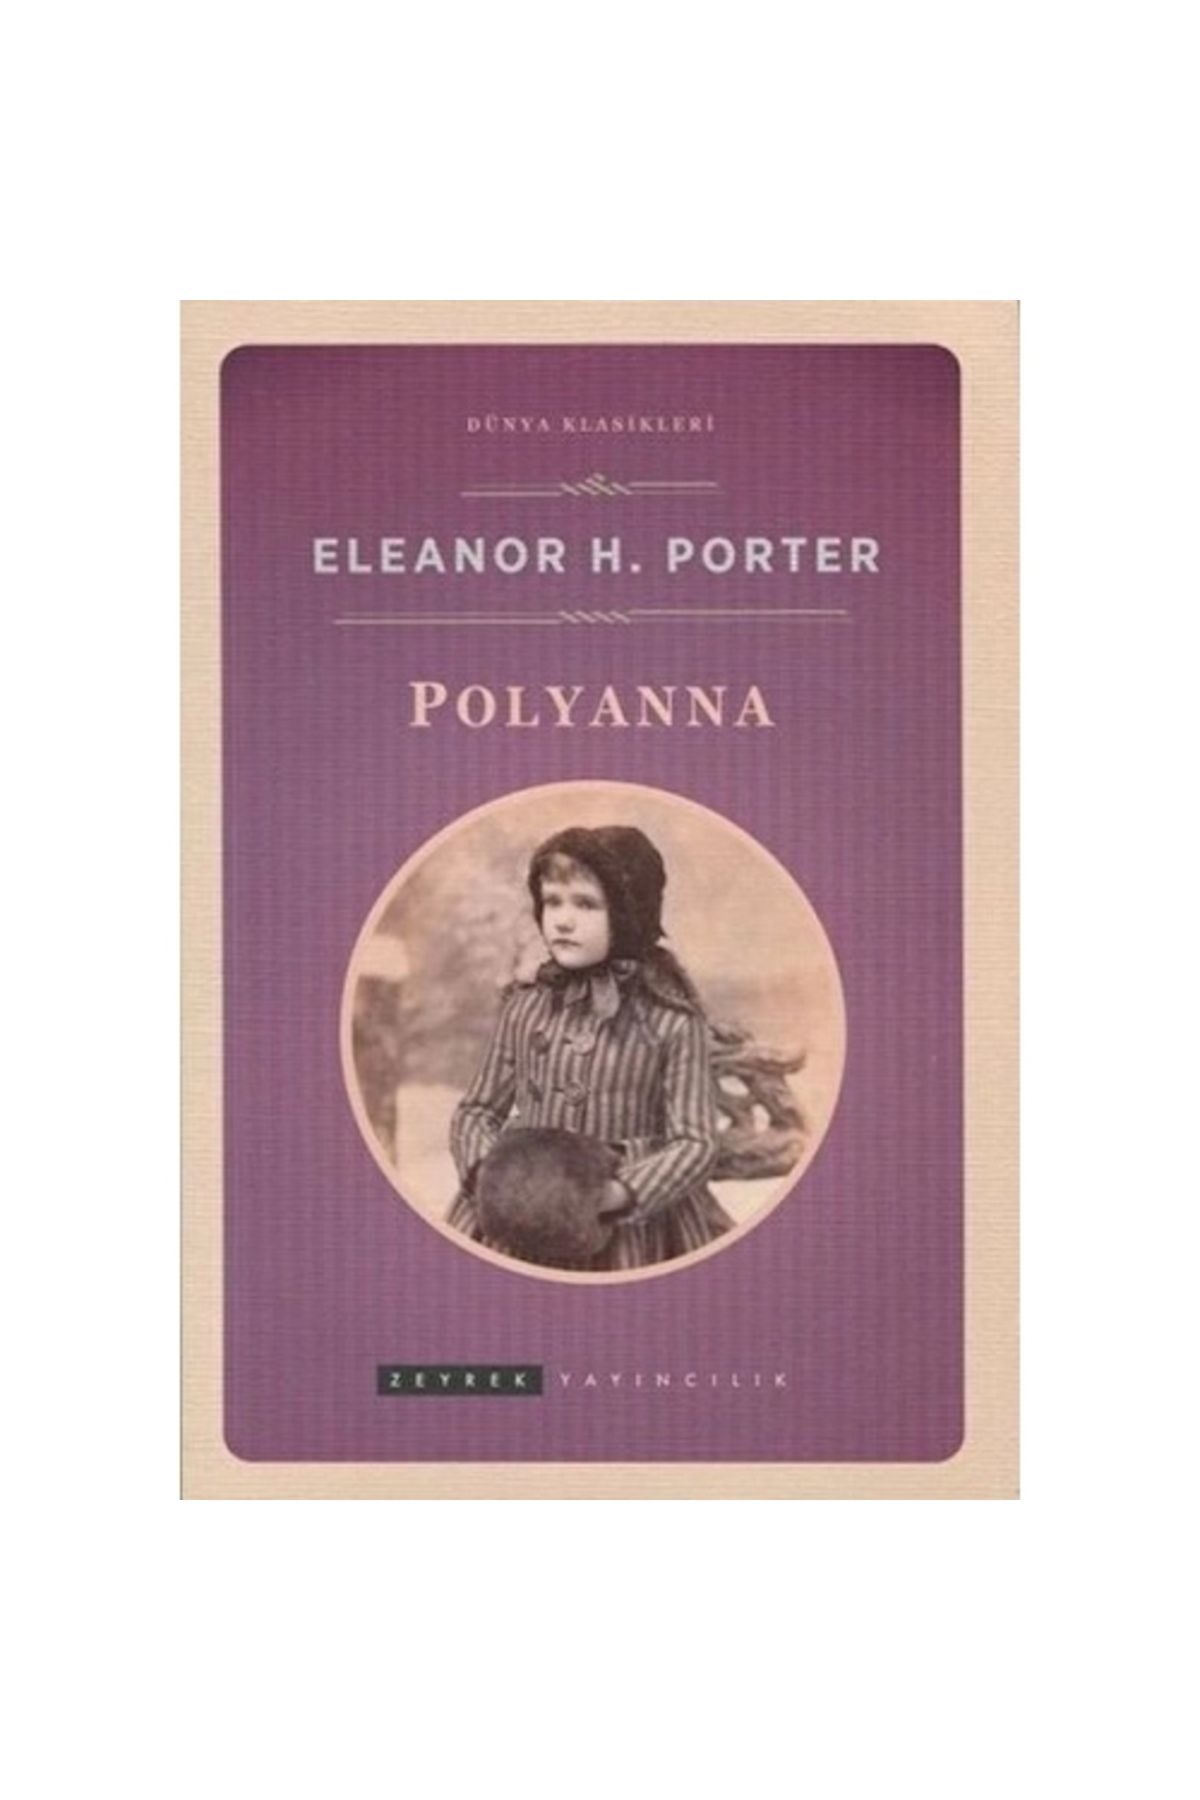 Zeyrek Yayıncılık Pollyanna